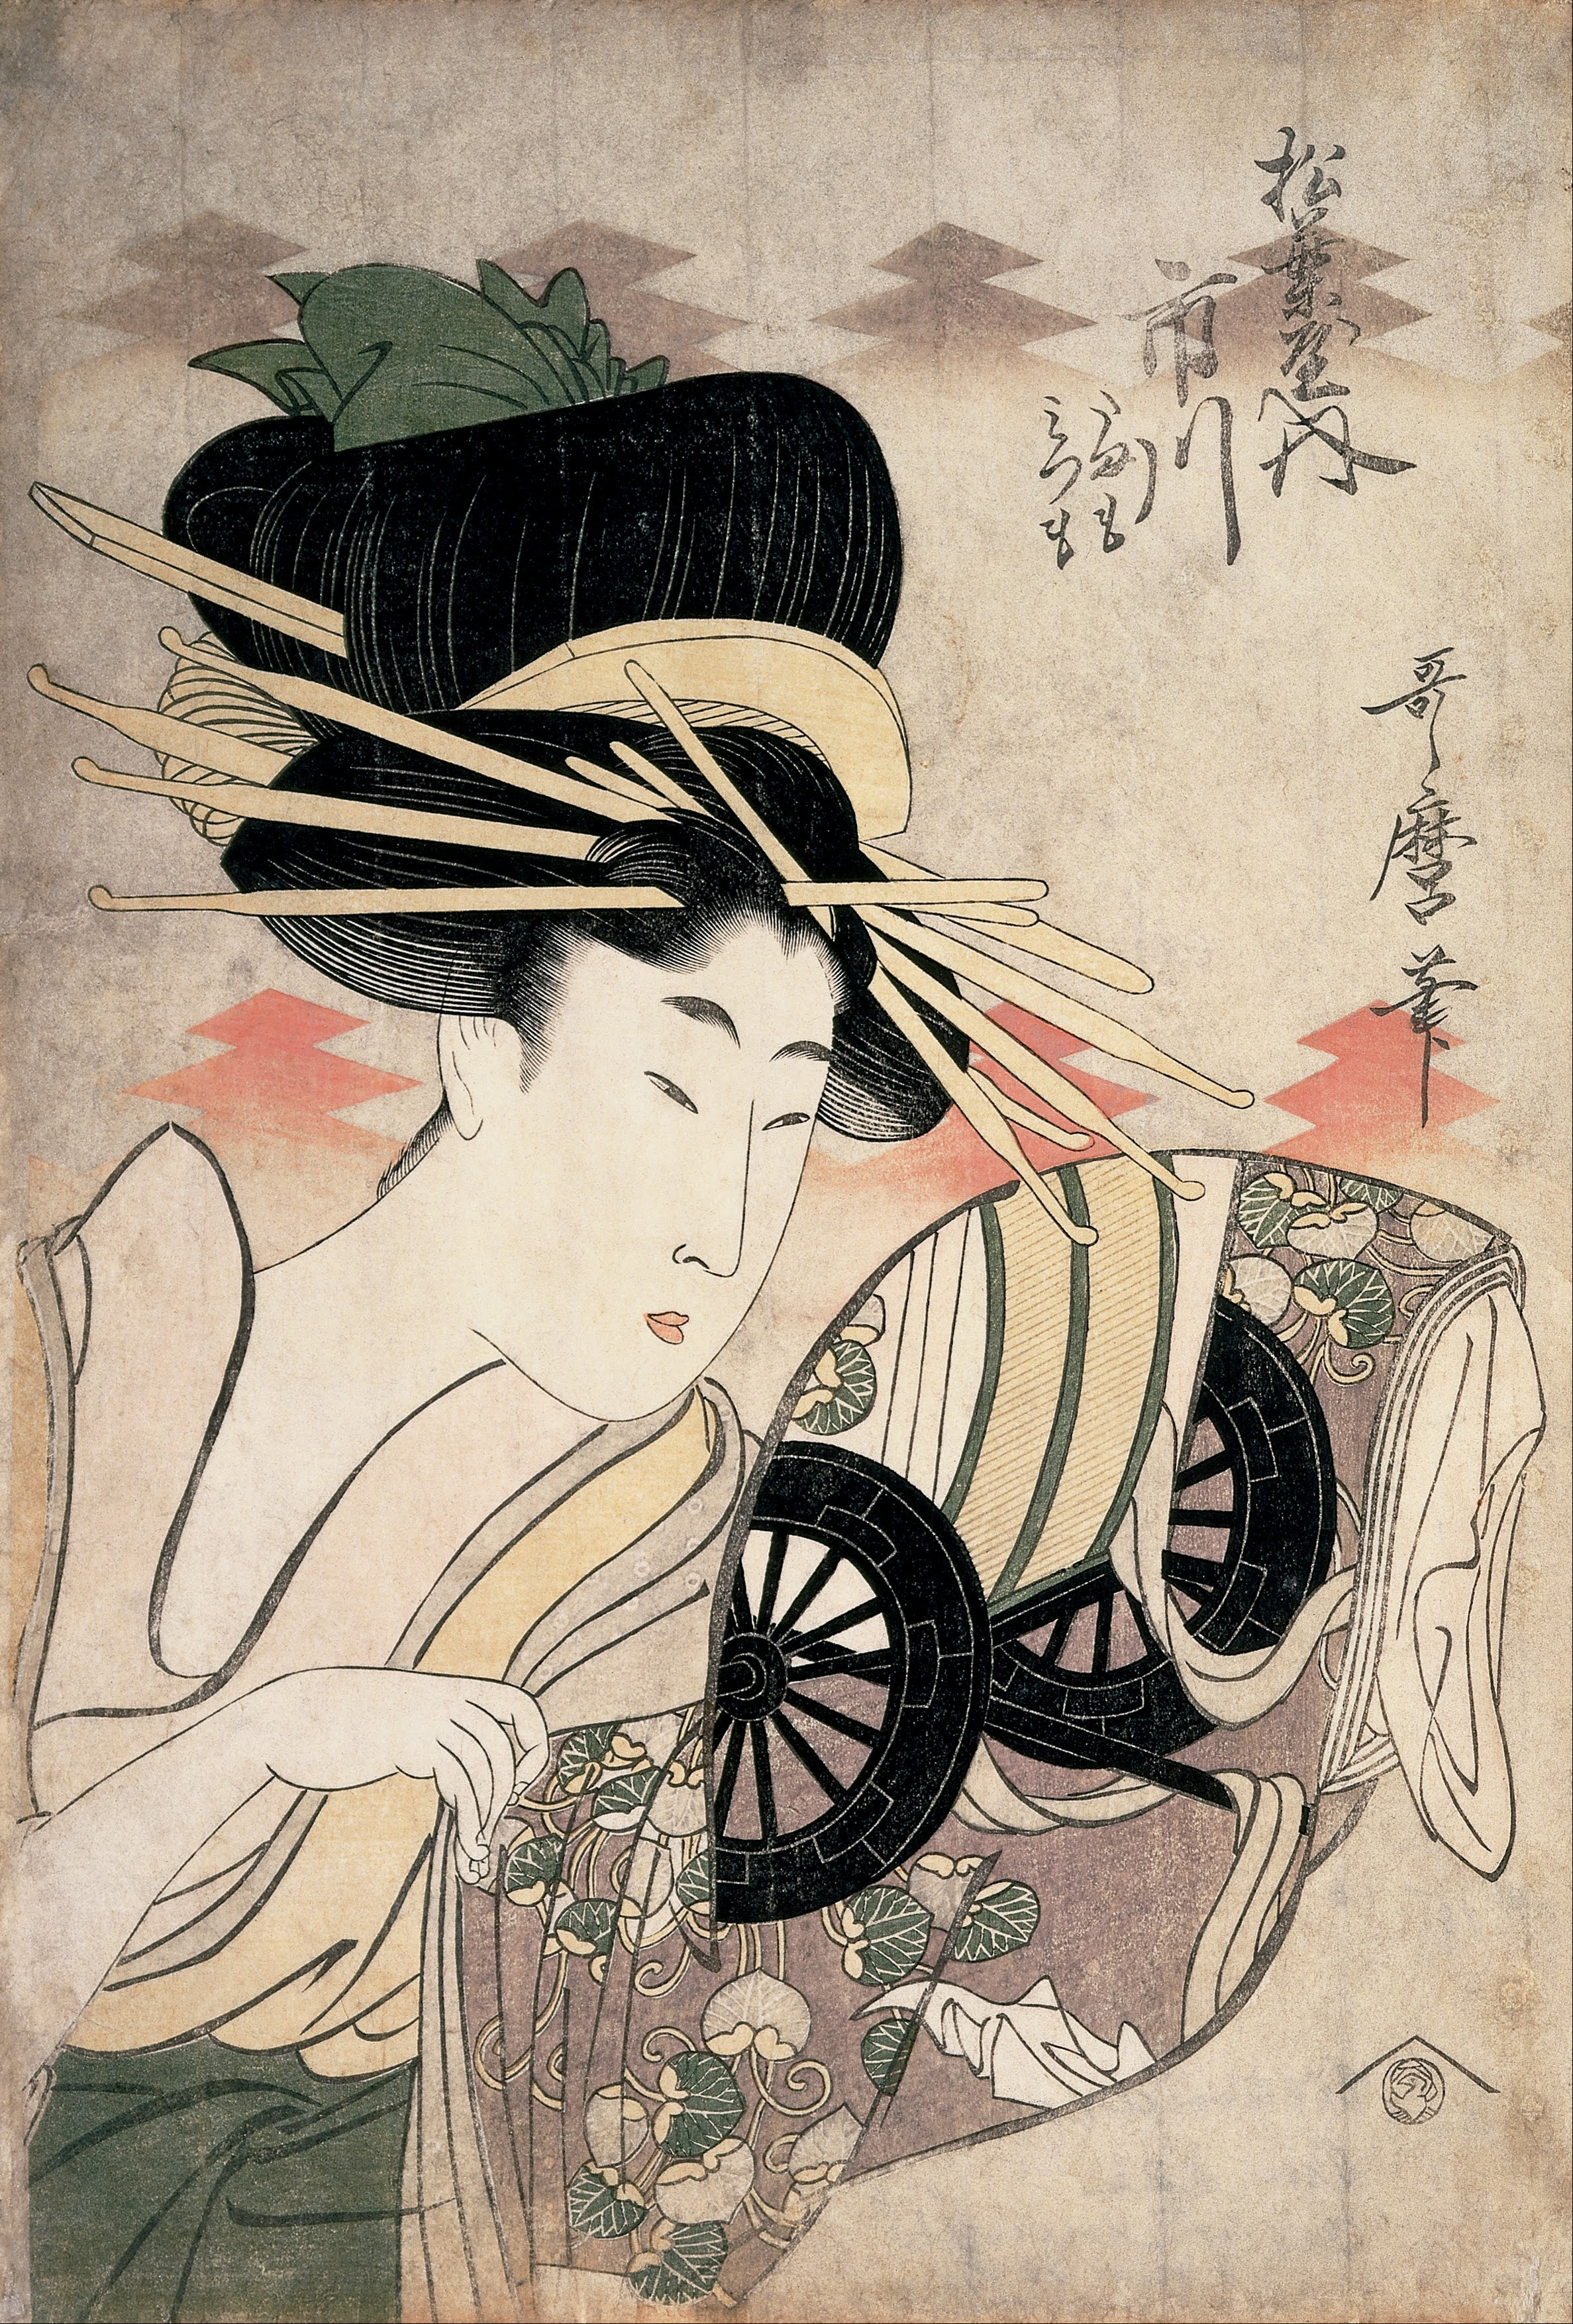 المحظية إيتشيكاوا من مؤسسة ماتسوبا by Kitagawa Utamaro - 1790 - 37.9 × 25.4 سم 